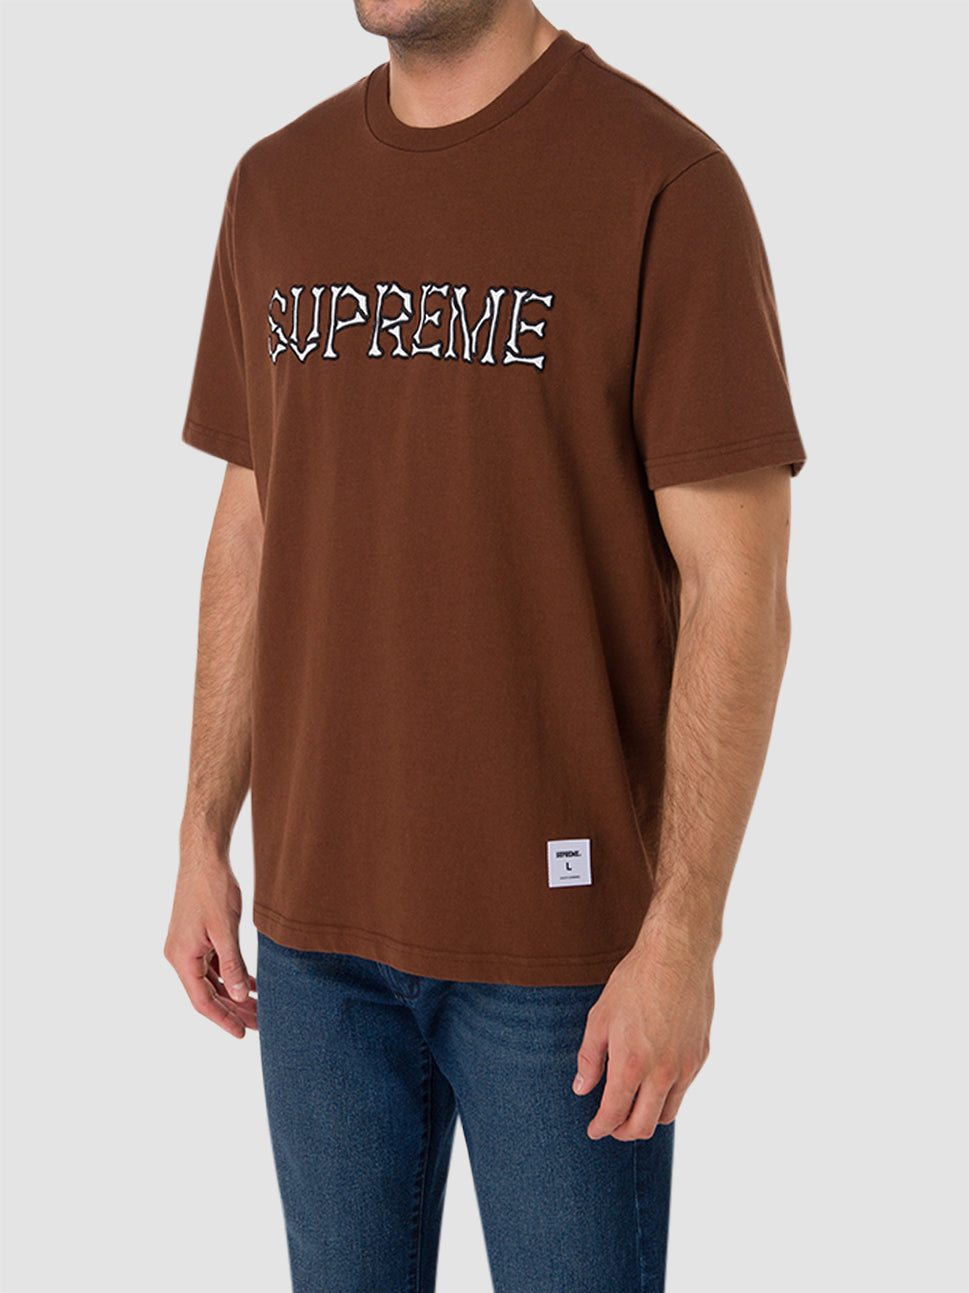 Supreme Bones Short Sleeve Top Brown